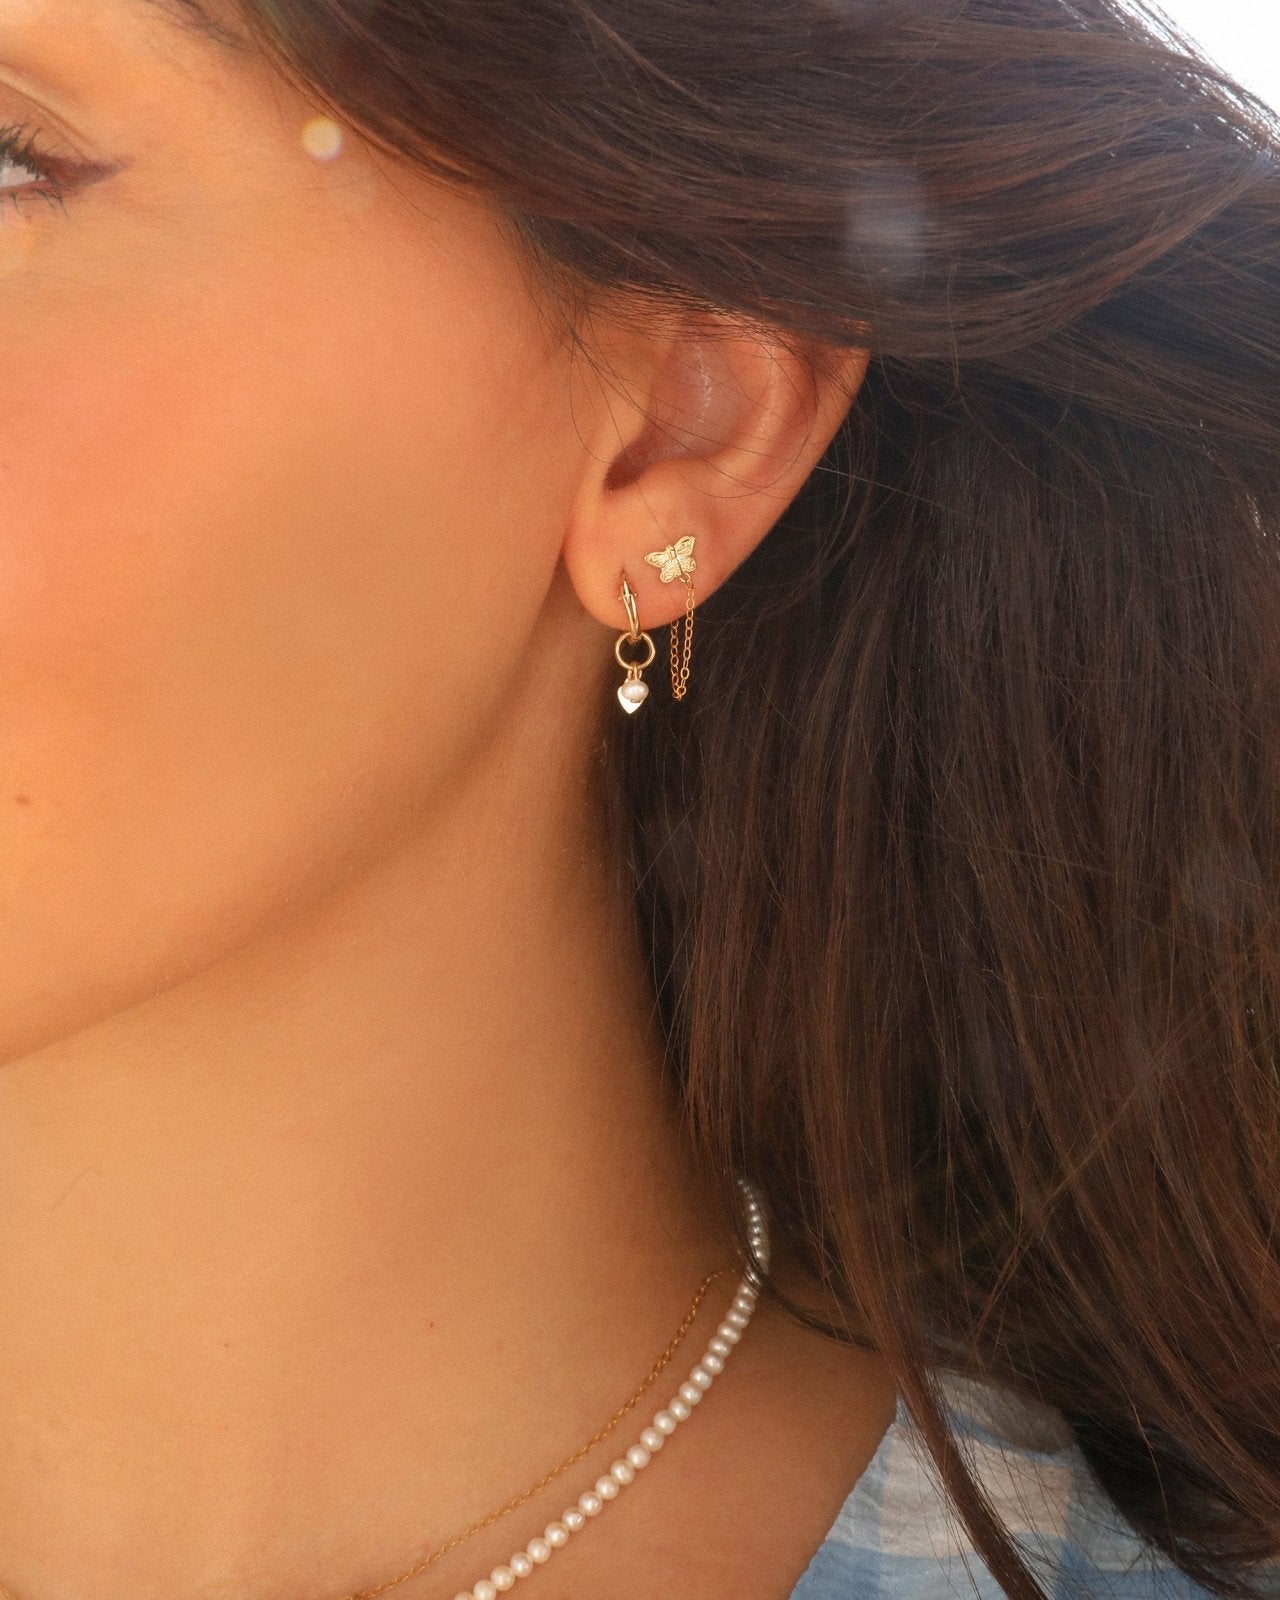 BUTTERFLY CHAIN STUD EARRINGS - The Littl - 14k Yellow Gold Fill - Earrings